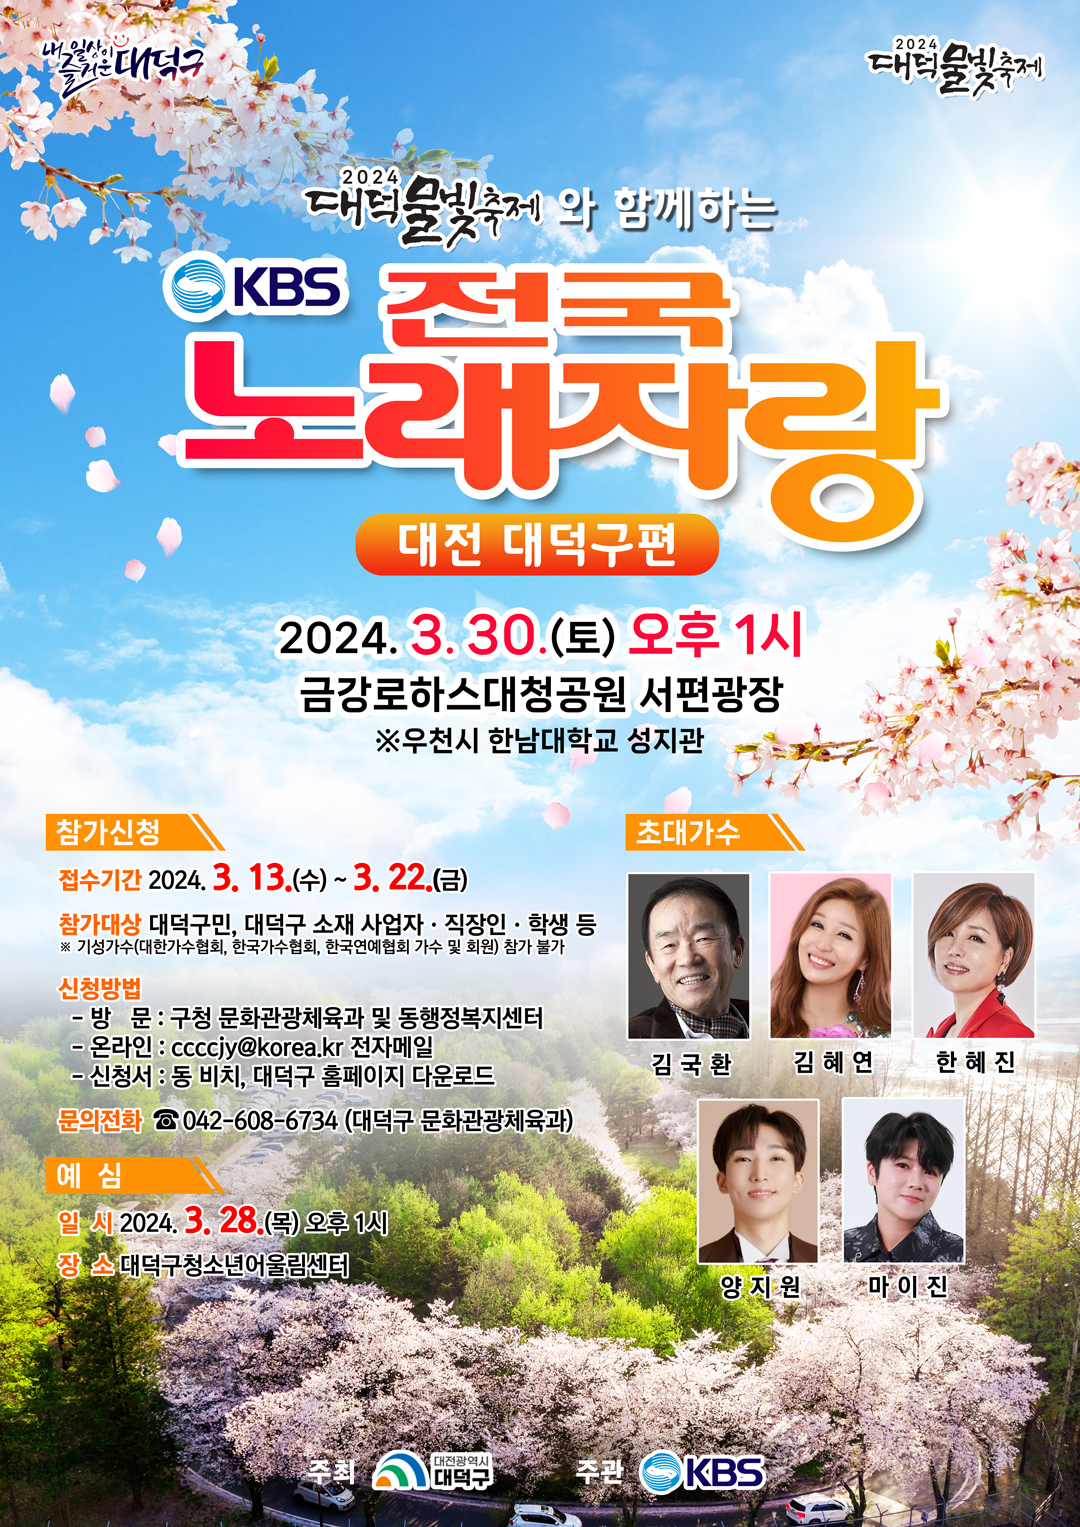 ‘대덕물빛축제와 함께하는 KBS 전국노래자랑’ 홍보 포스터 / 대전 대덕구